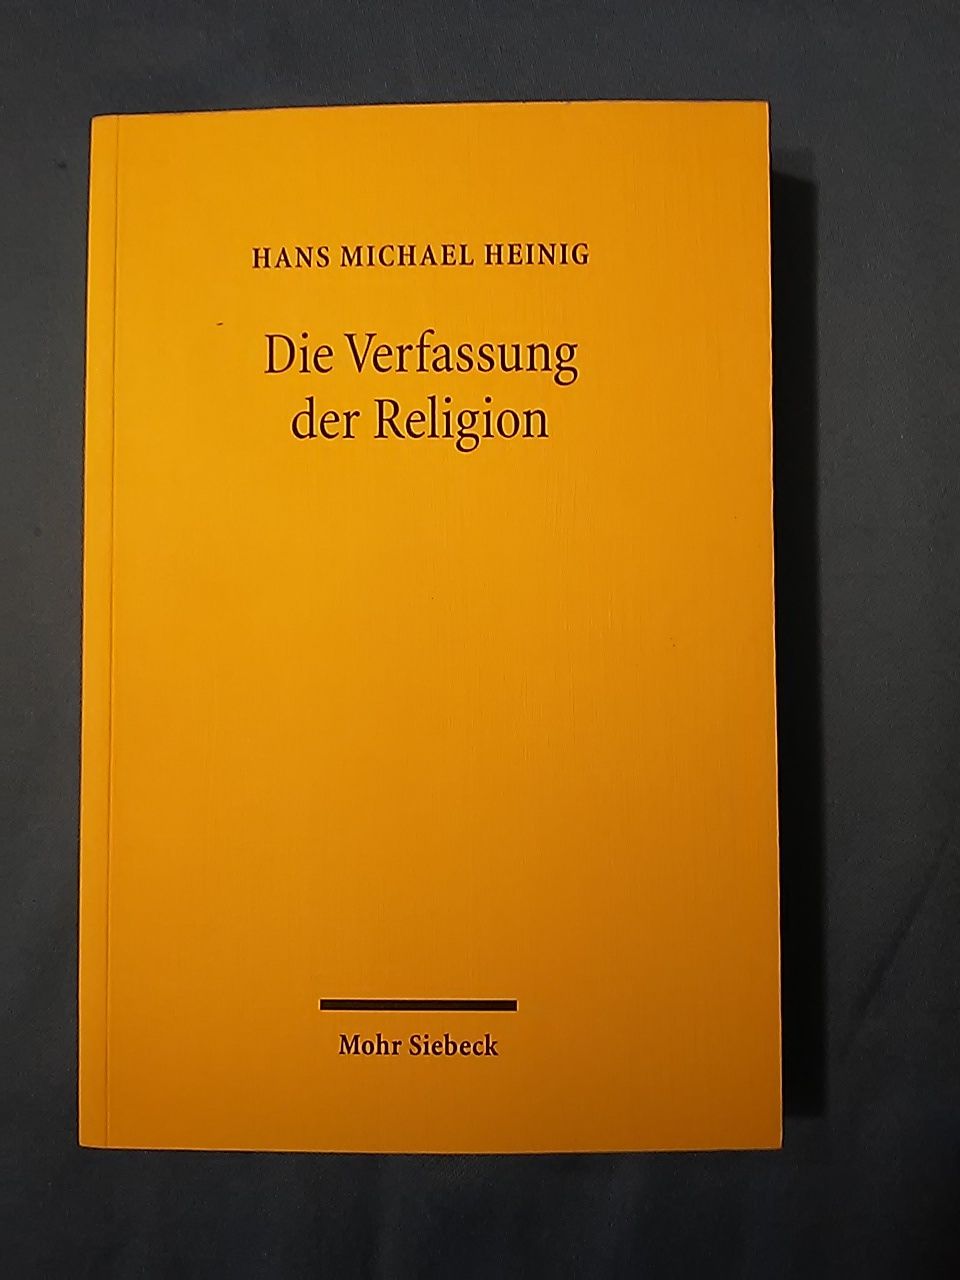 Die Verfassung der Religion. Beiträge zum Religionsverfassungsrecht. - Heinig, Hans Michael.